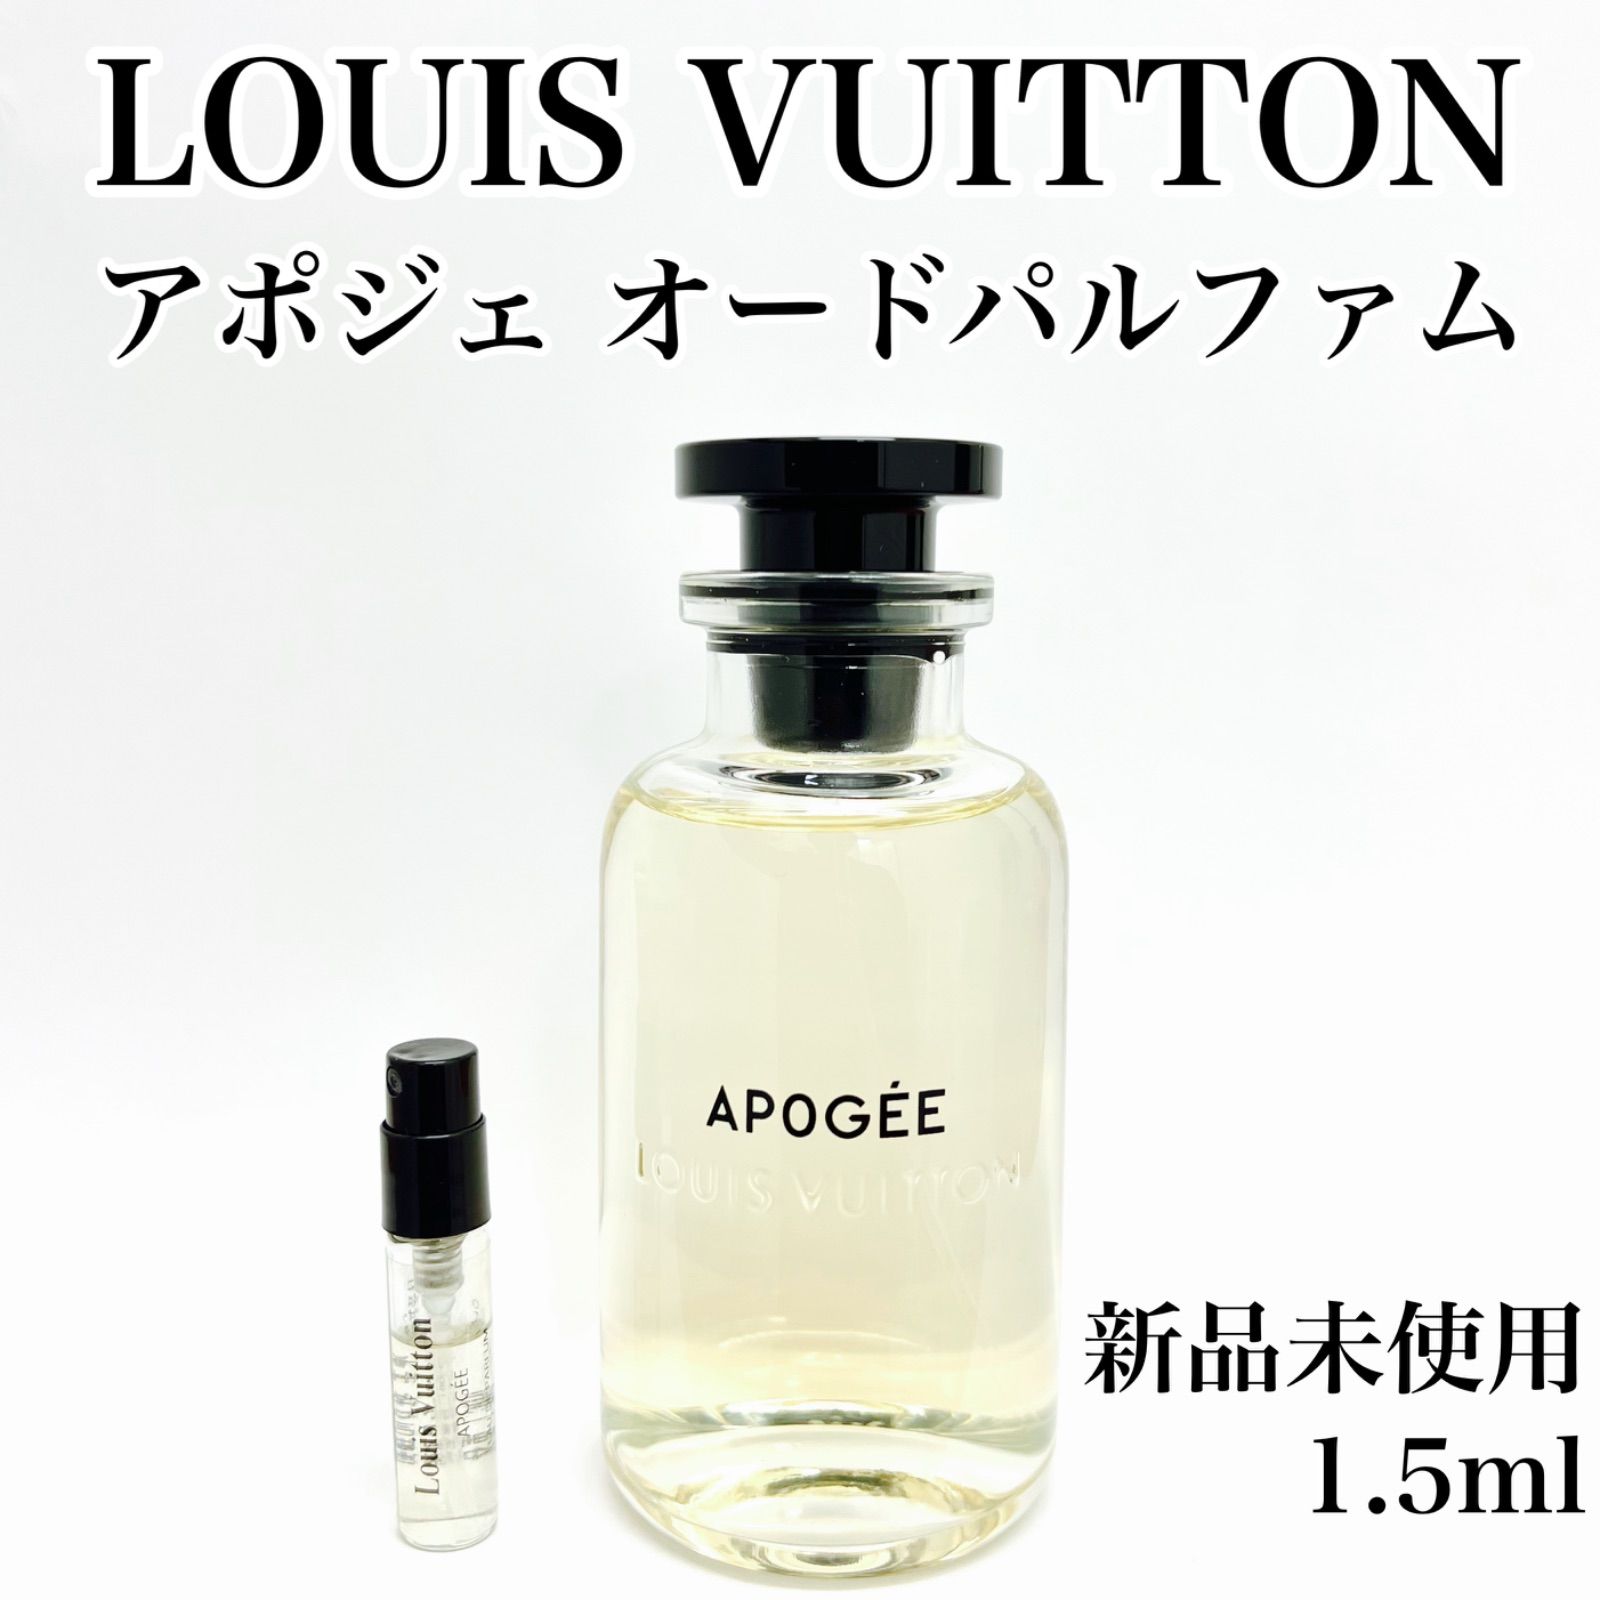 ルイヴィトン 香水 アポジェ 100ml - 香水(女性用)